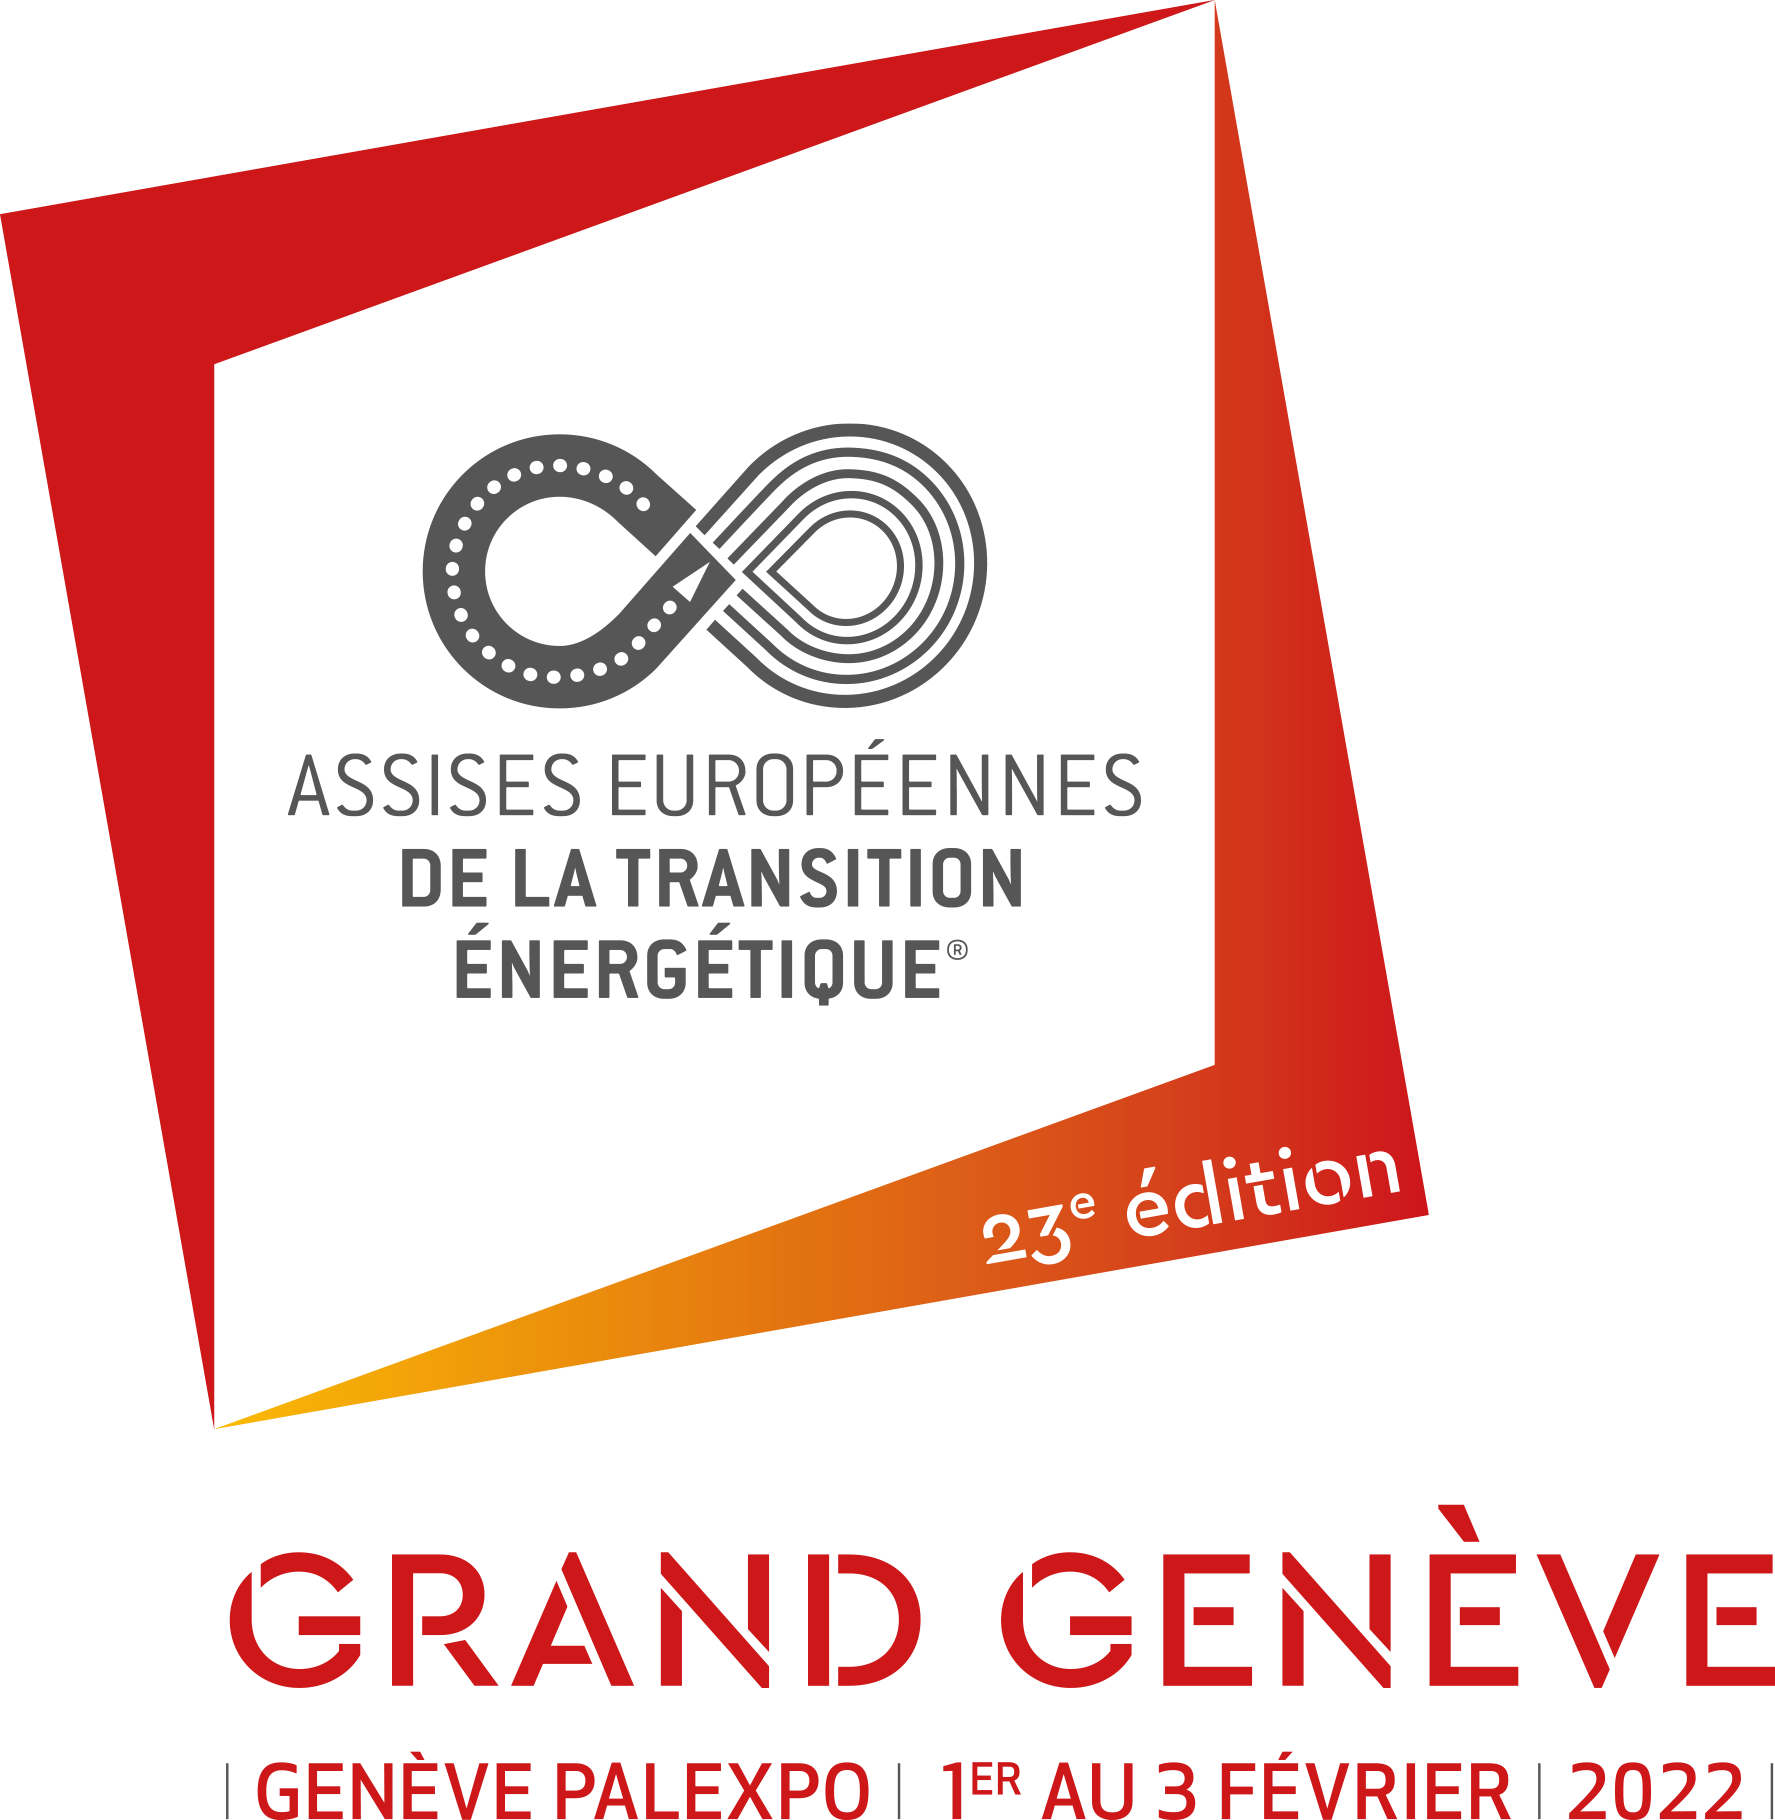 Le territoire transfrontalier du Grand Genève accueillera les Assises européennes de la transition énergétique ©assiseseuropéennes